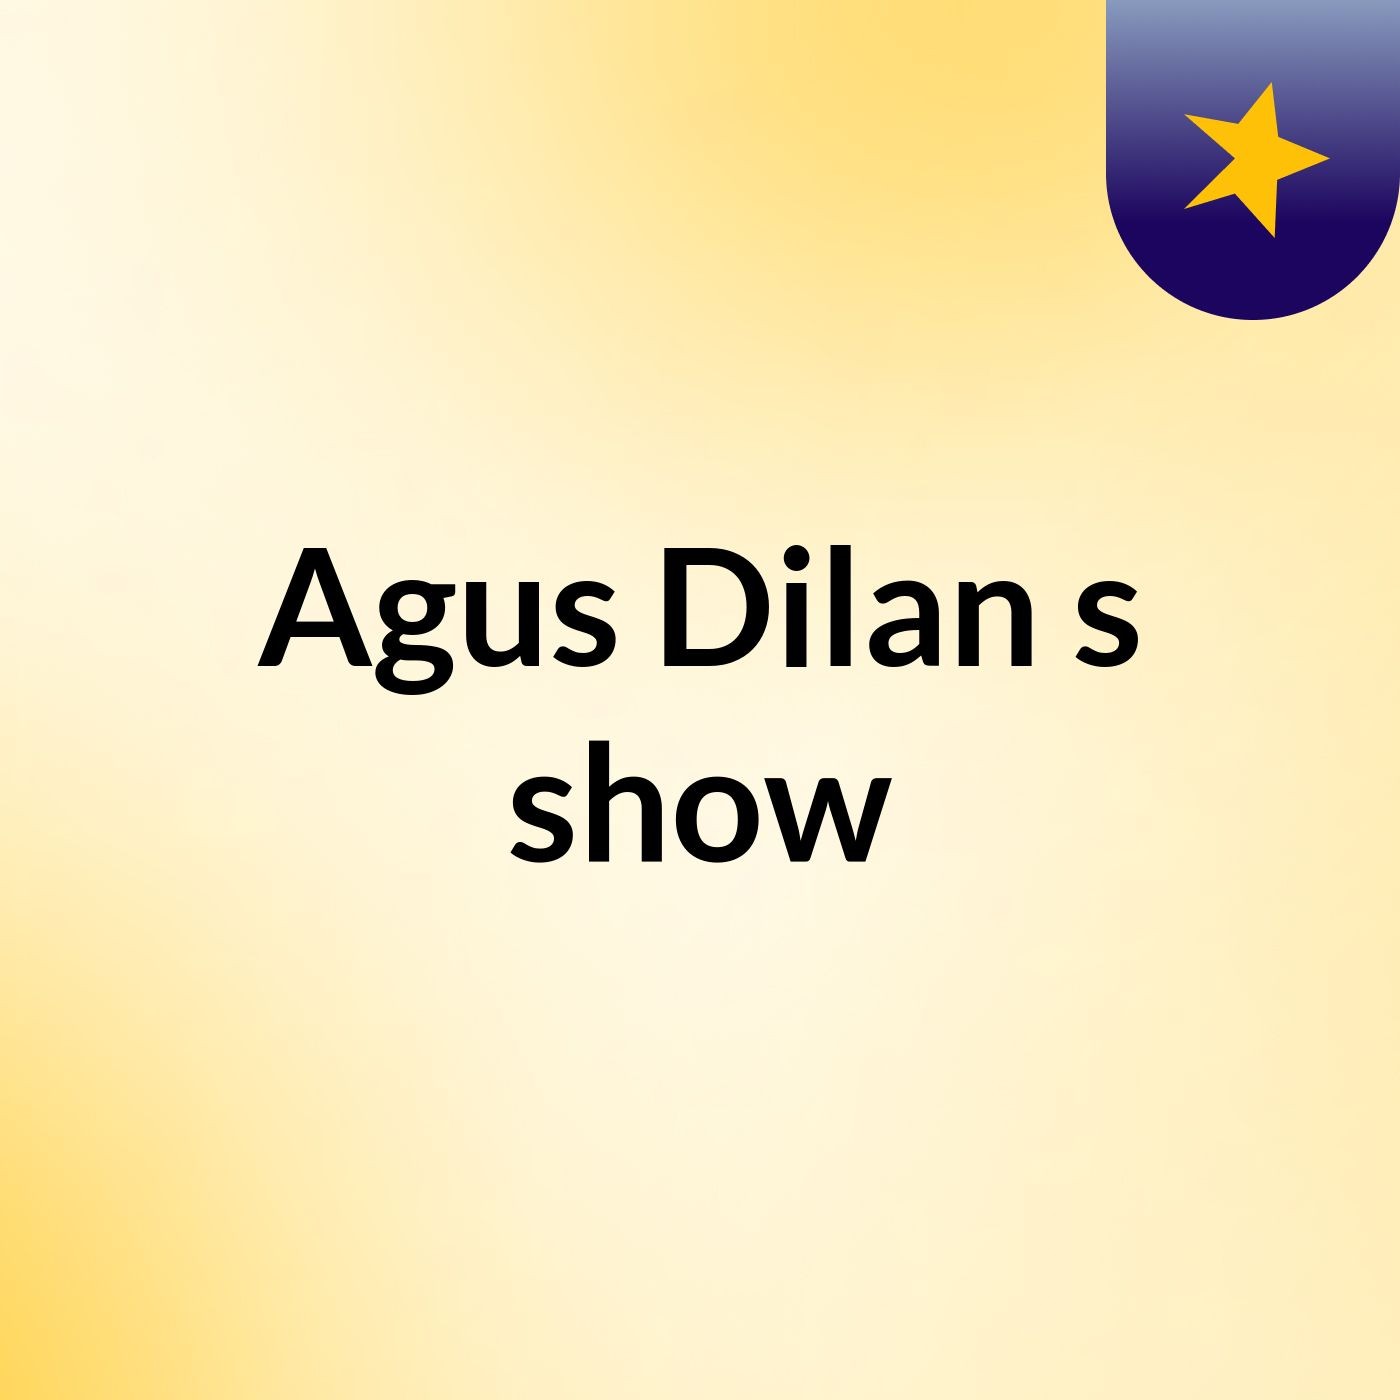 Episode 4 - Agus Dilan's show